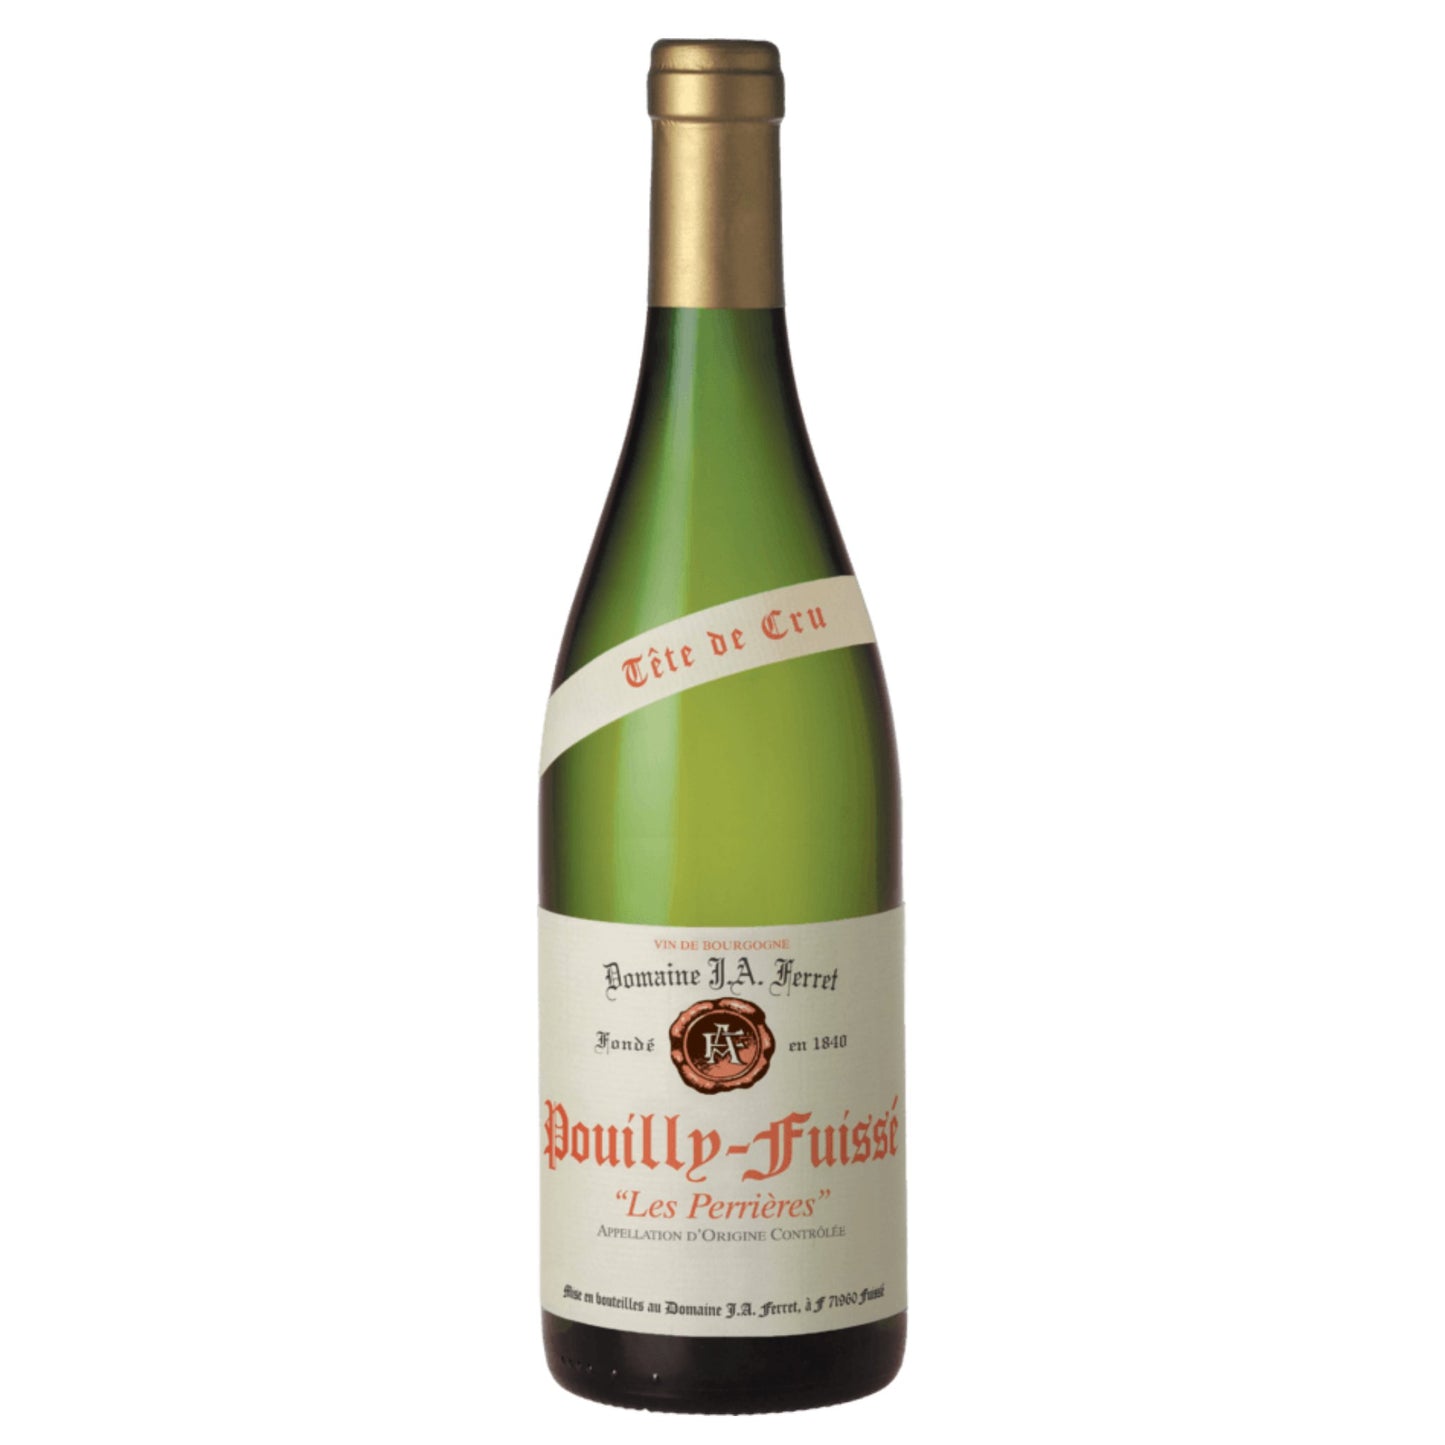 J. A. Ferret Pouilly Fuisse Tete de Cru Les Perrieres - Grand Vin Pte Ltd